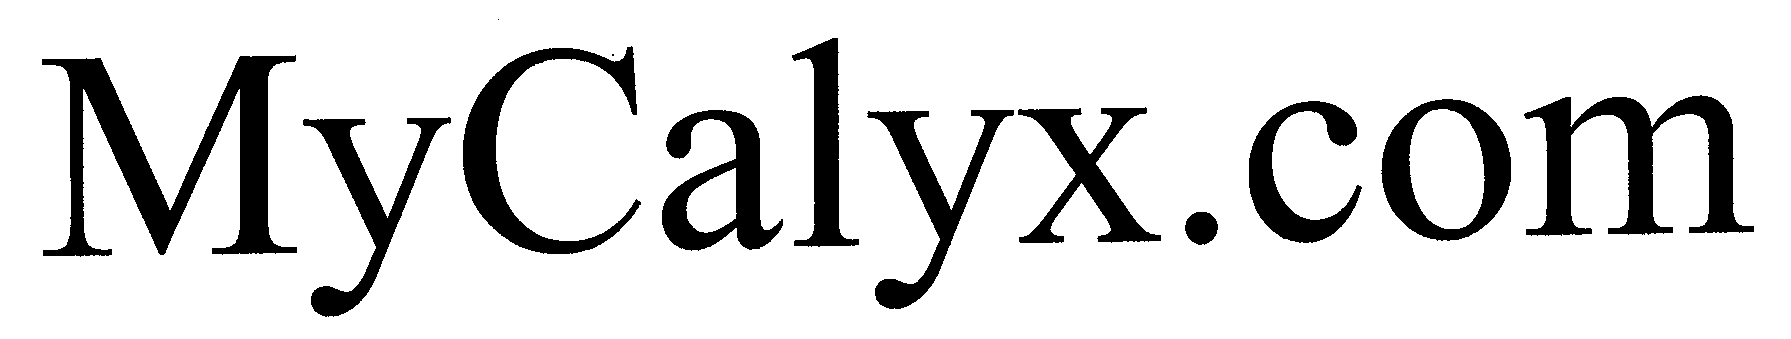  MYCALYX.COM